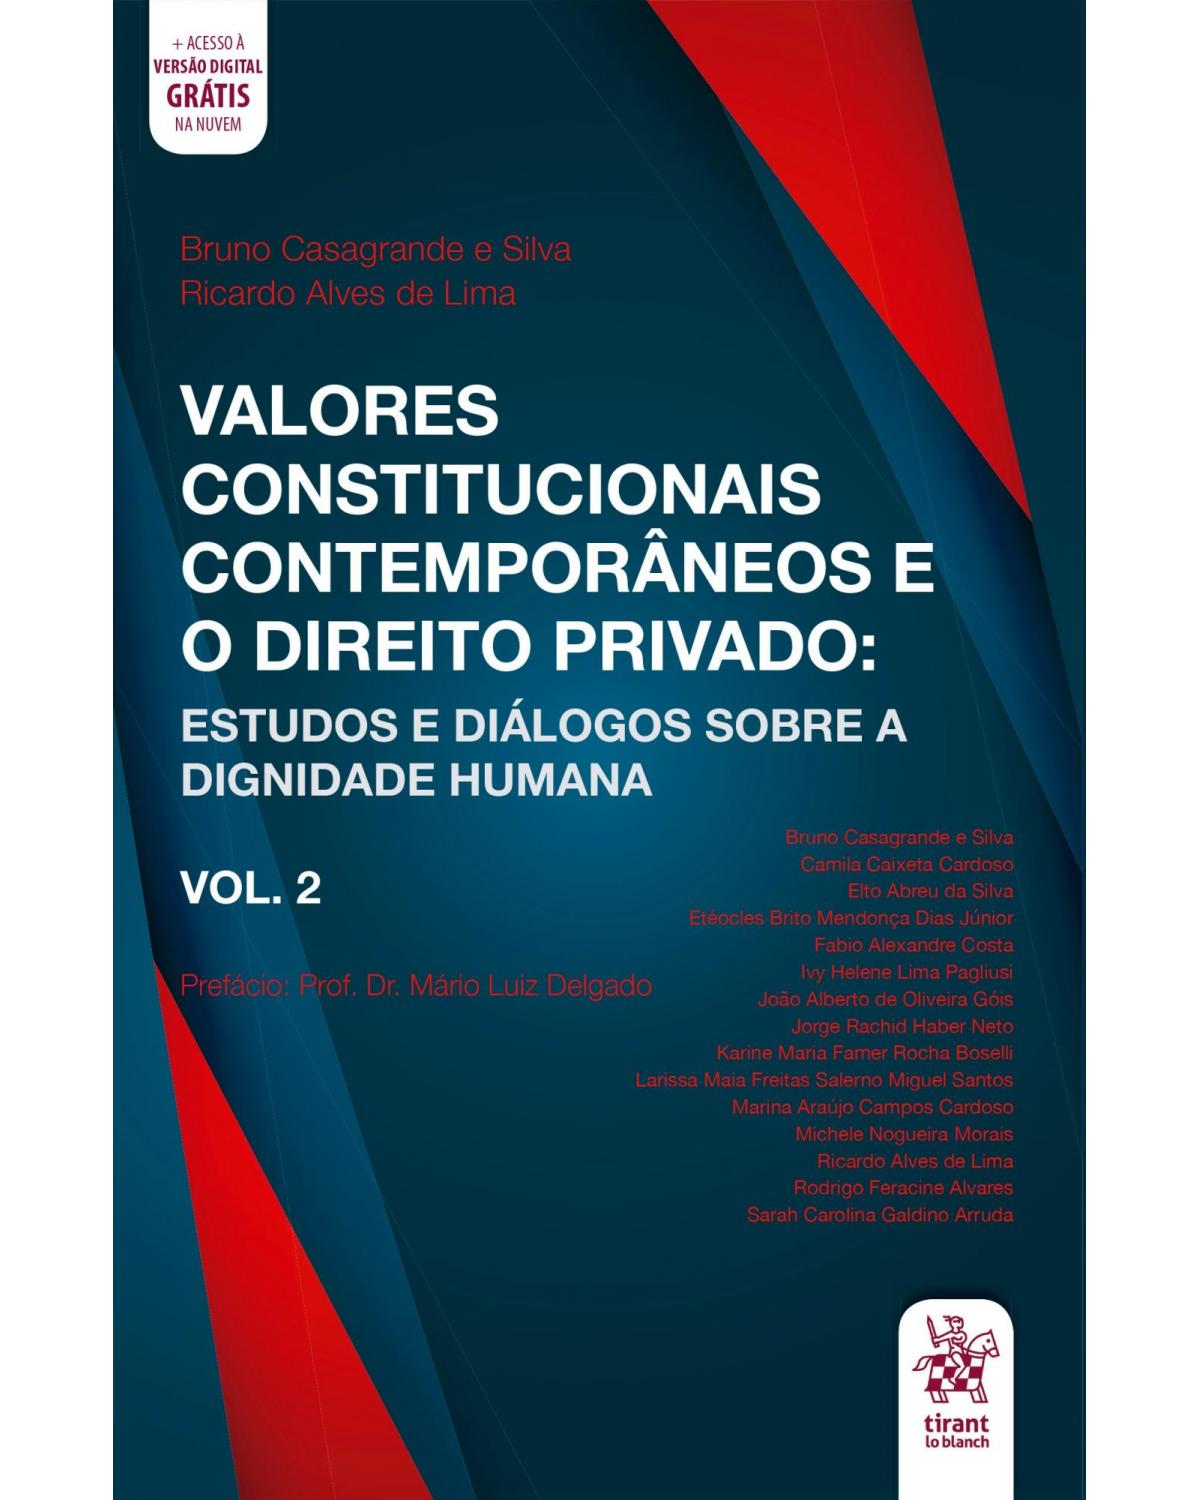 Valores constitucionais contemporâneos e o direito privado - Volume 2: estudos e diálogos sobre a dignidade humana - 1ª Edição | 2020